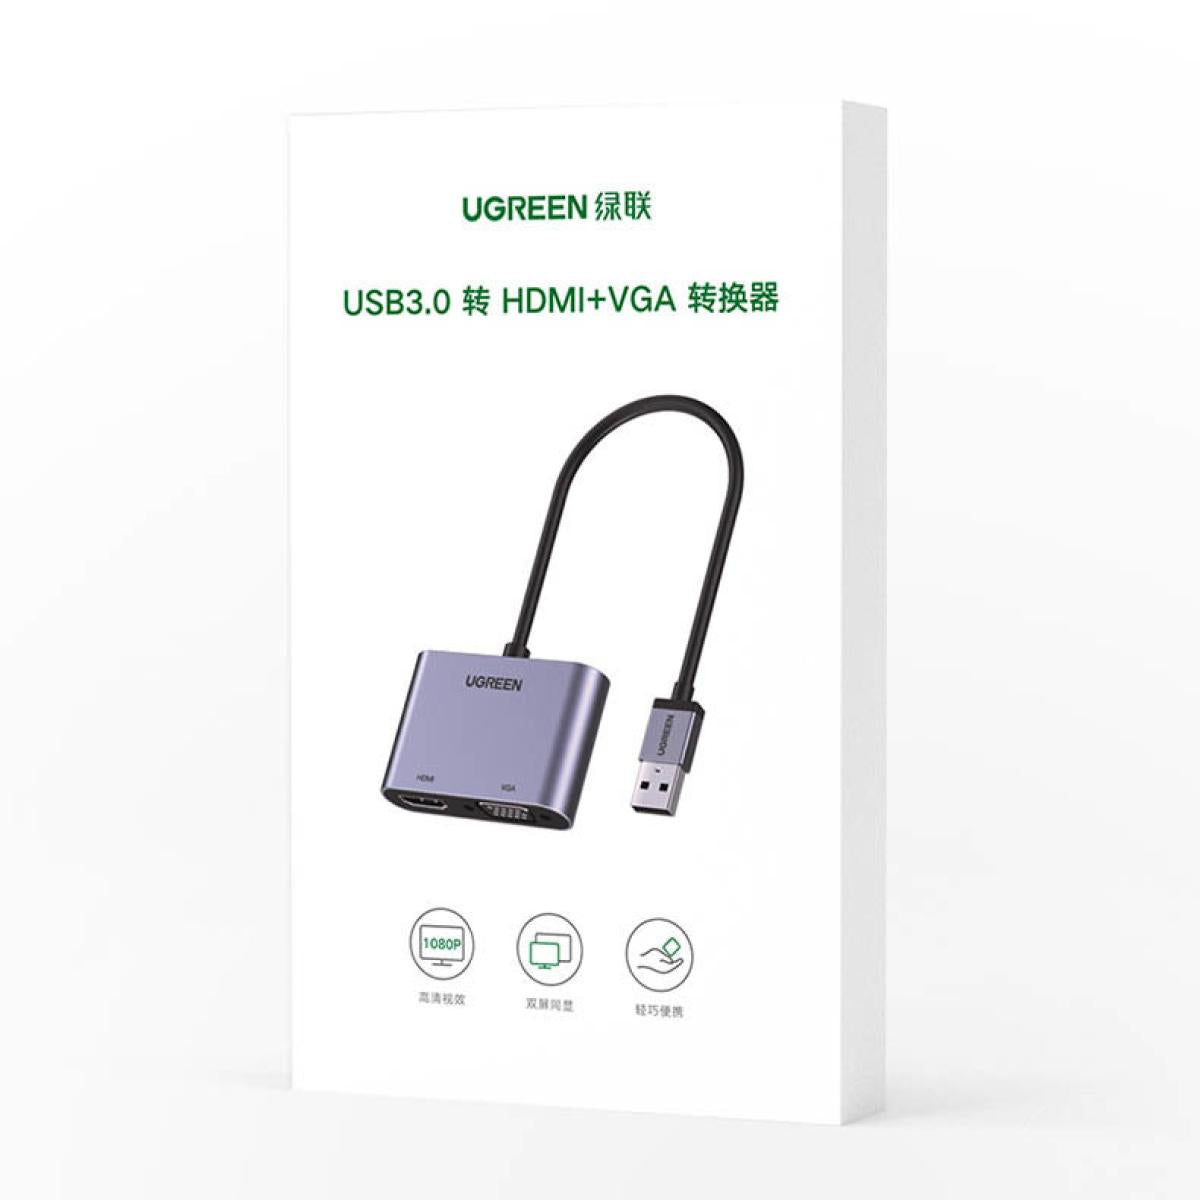 UGREEN USB 3.0 HDMI & VGA Converter